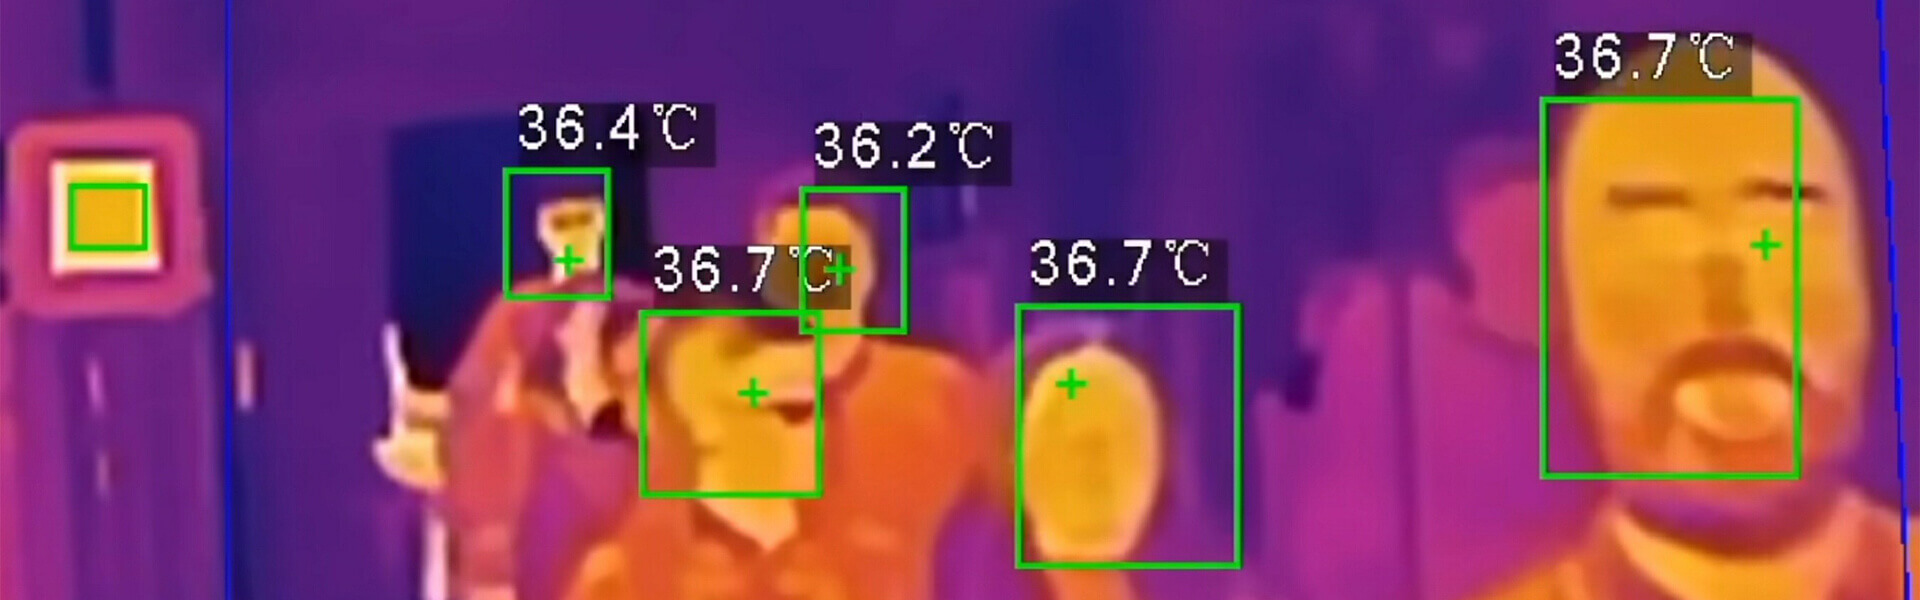 Sistemi per il monitoraggio della temperatura corporea a Torino